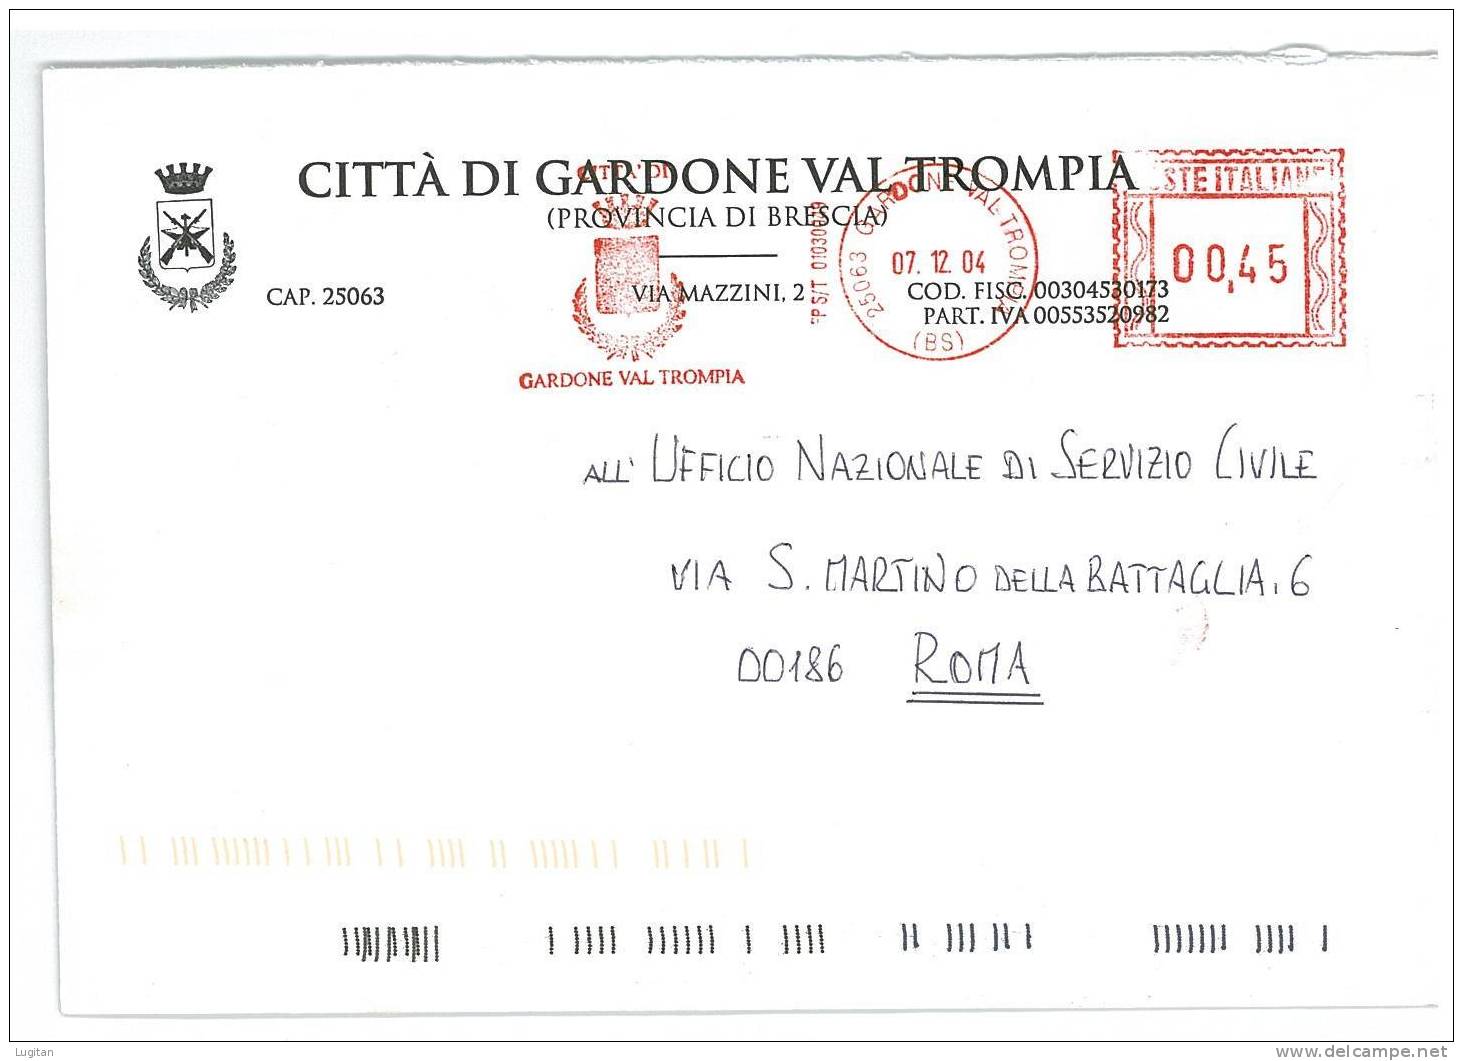 GARDONE VALTROMPIA CAP 25063  PROV. BRESCIA  ANNO 2004  BS - AMR - LOMBARDIA -TEMATICA COMUNI D'ITALIA - STORIA POSTALE - Macchine Per Obliterare (EMA)